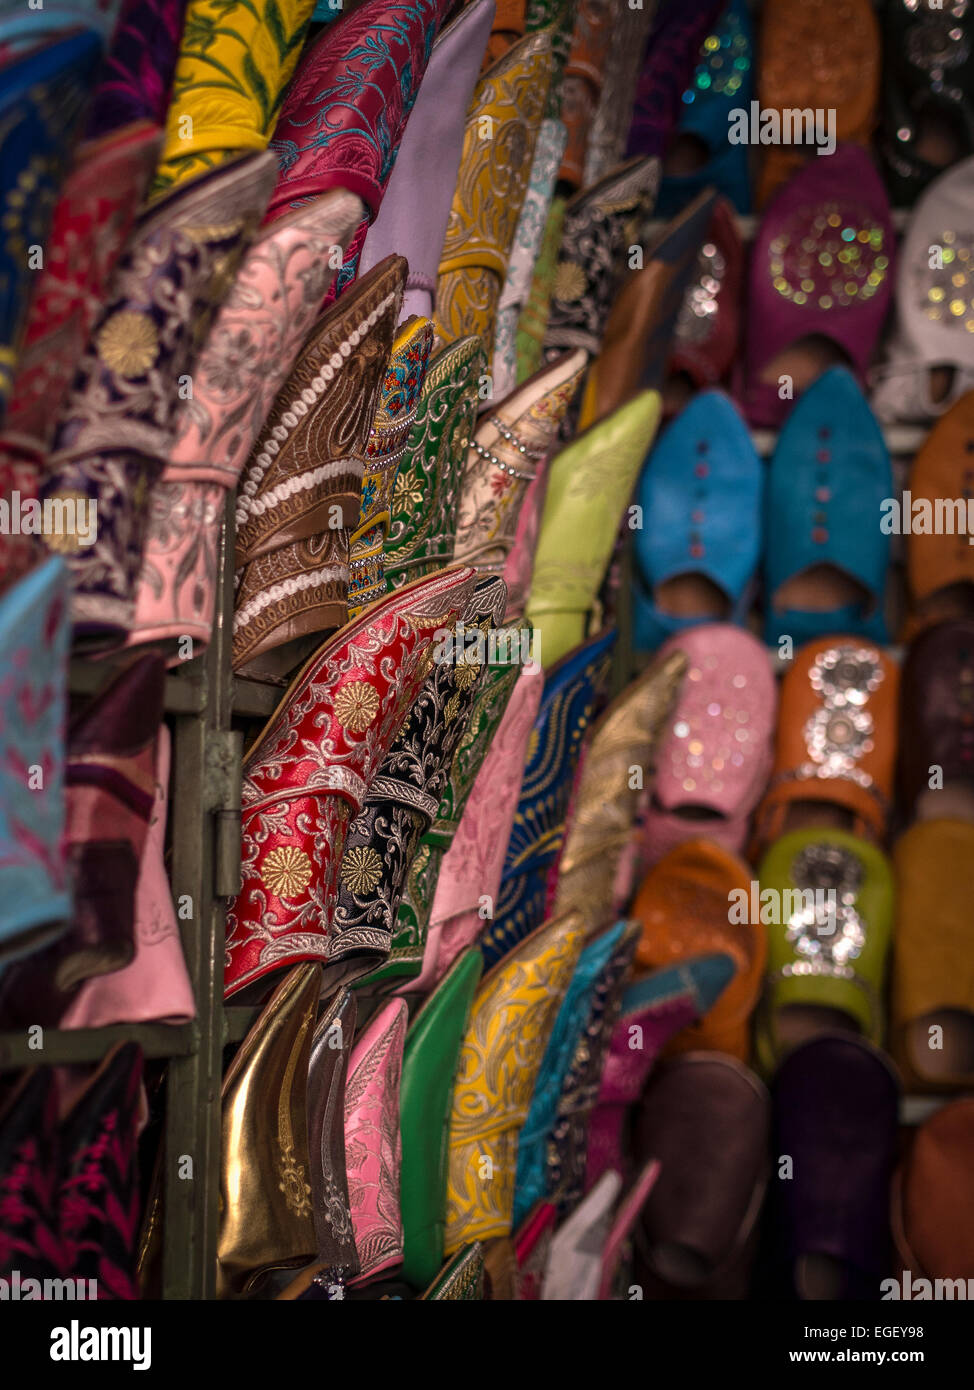 Women's FILA Shoes for sale in Marrakech